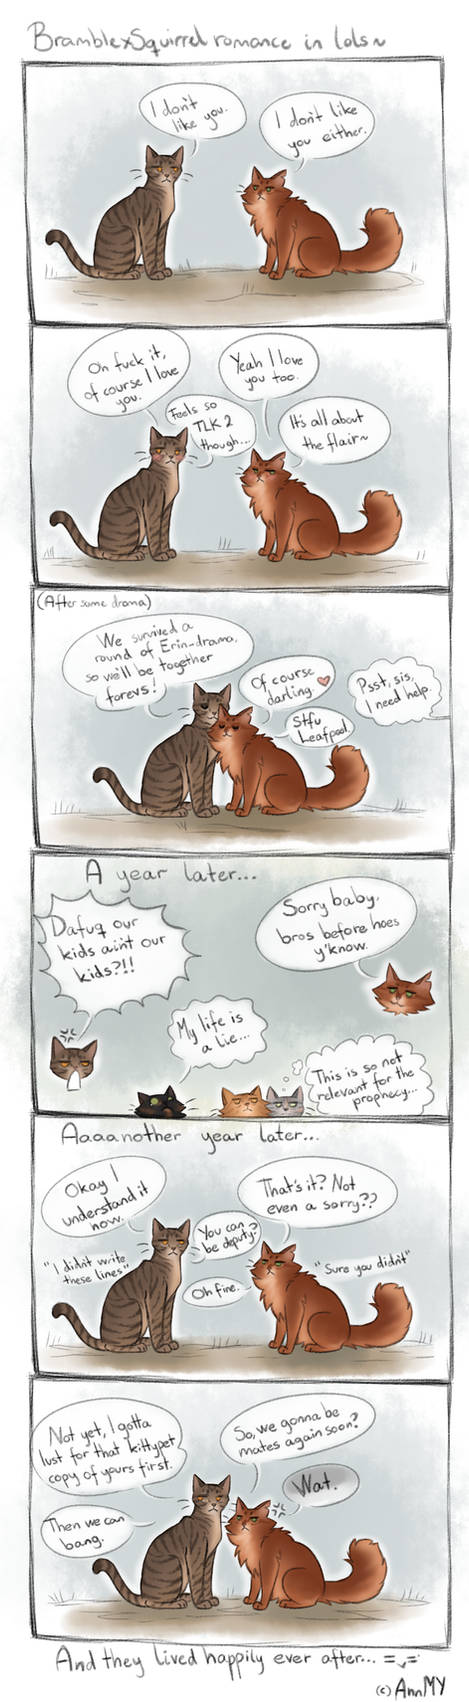 BramblexSquirrel romance in Lols by KittyStorage on DeviantArt